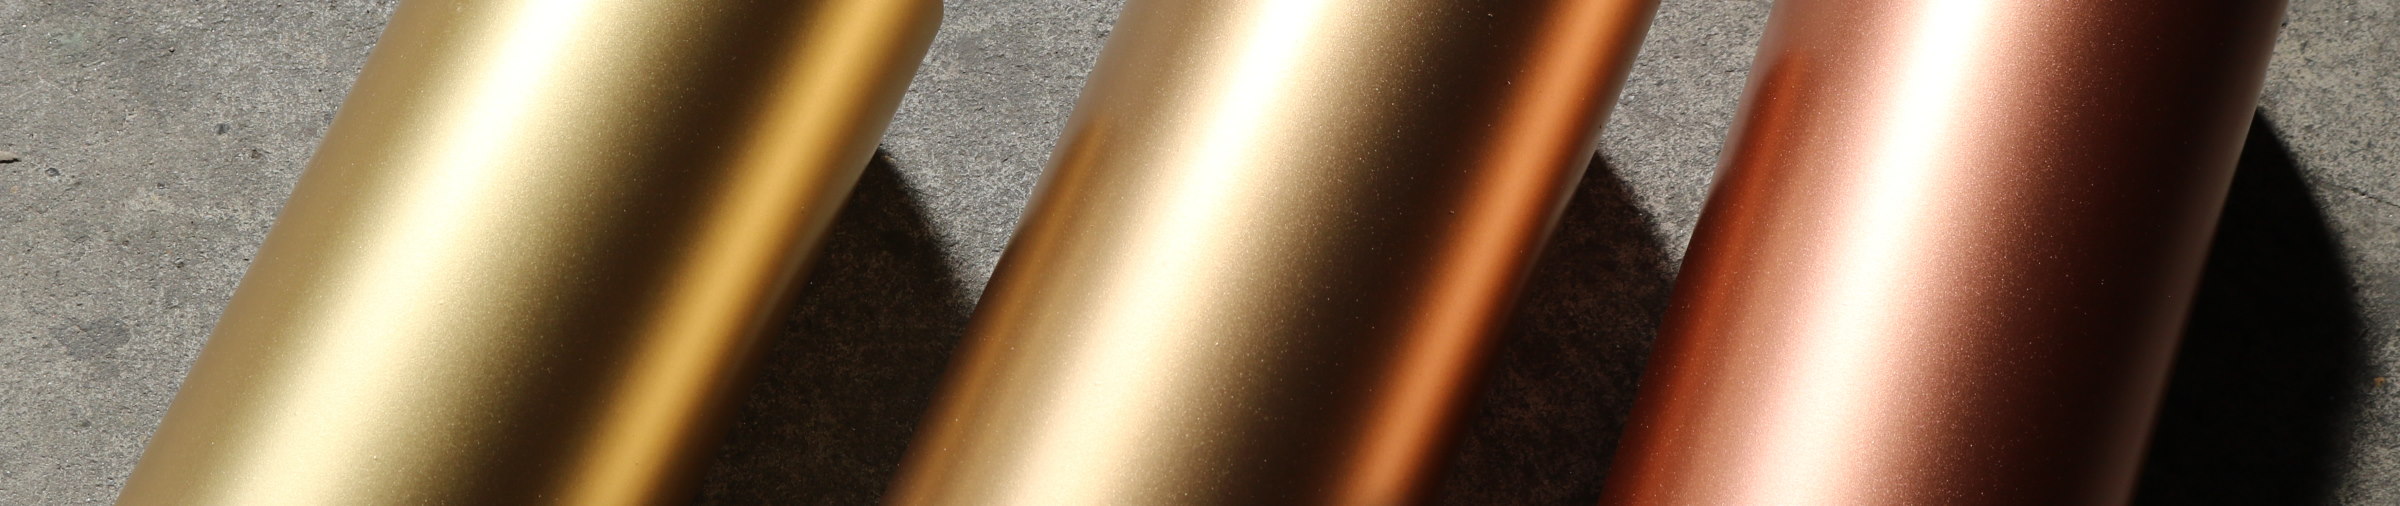 bronze metal color